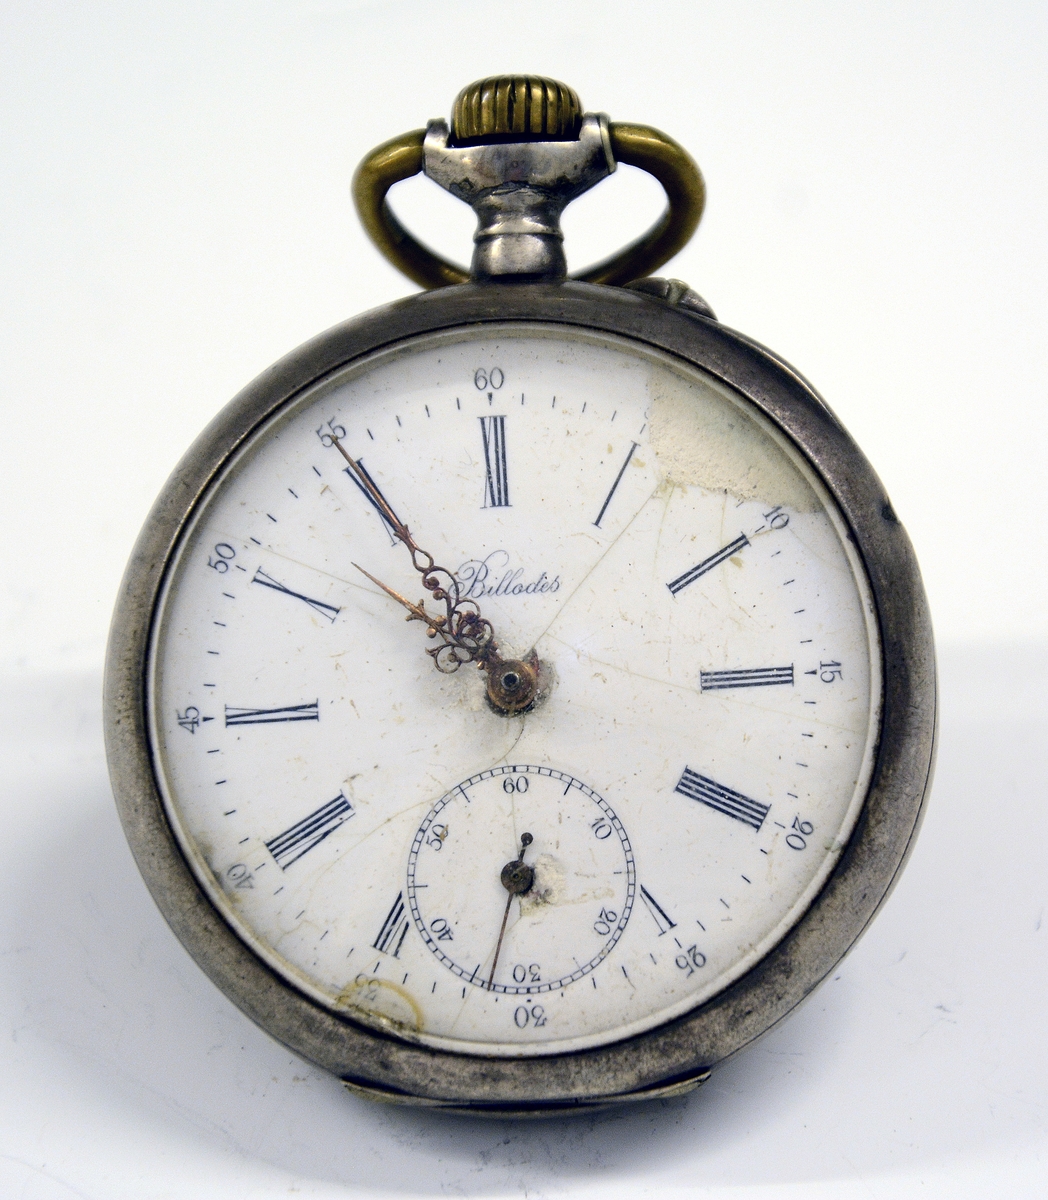 Lommeur, ang. Sveits. Uret trekkes opp ved bøylen. Blant de første standardiserte urene som førte til masseproduksjon.